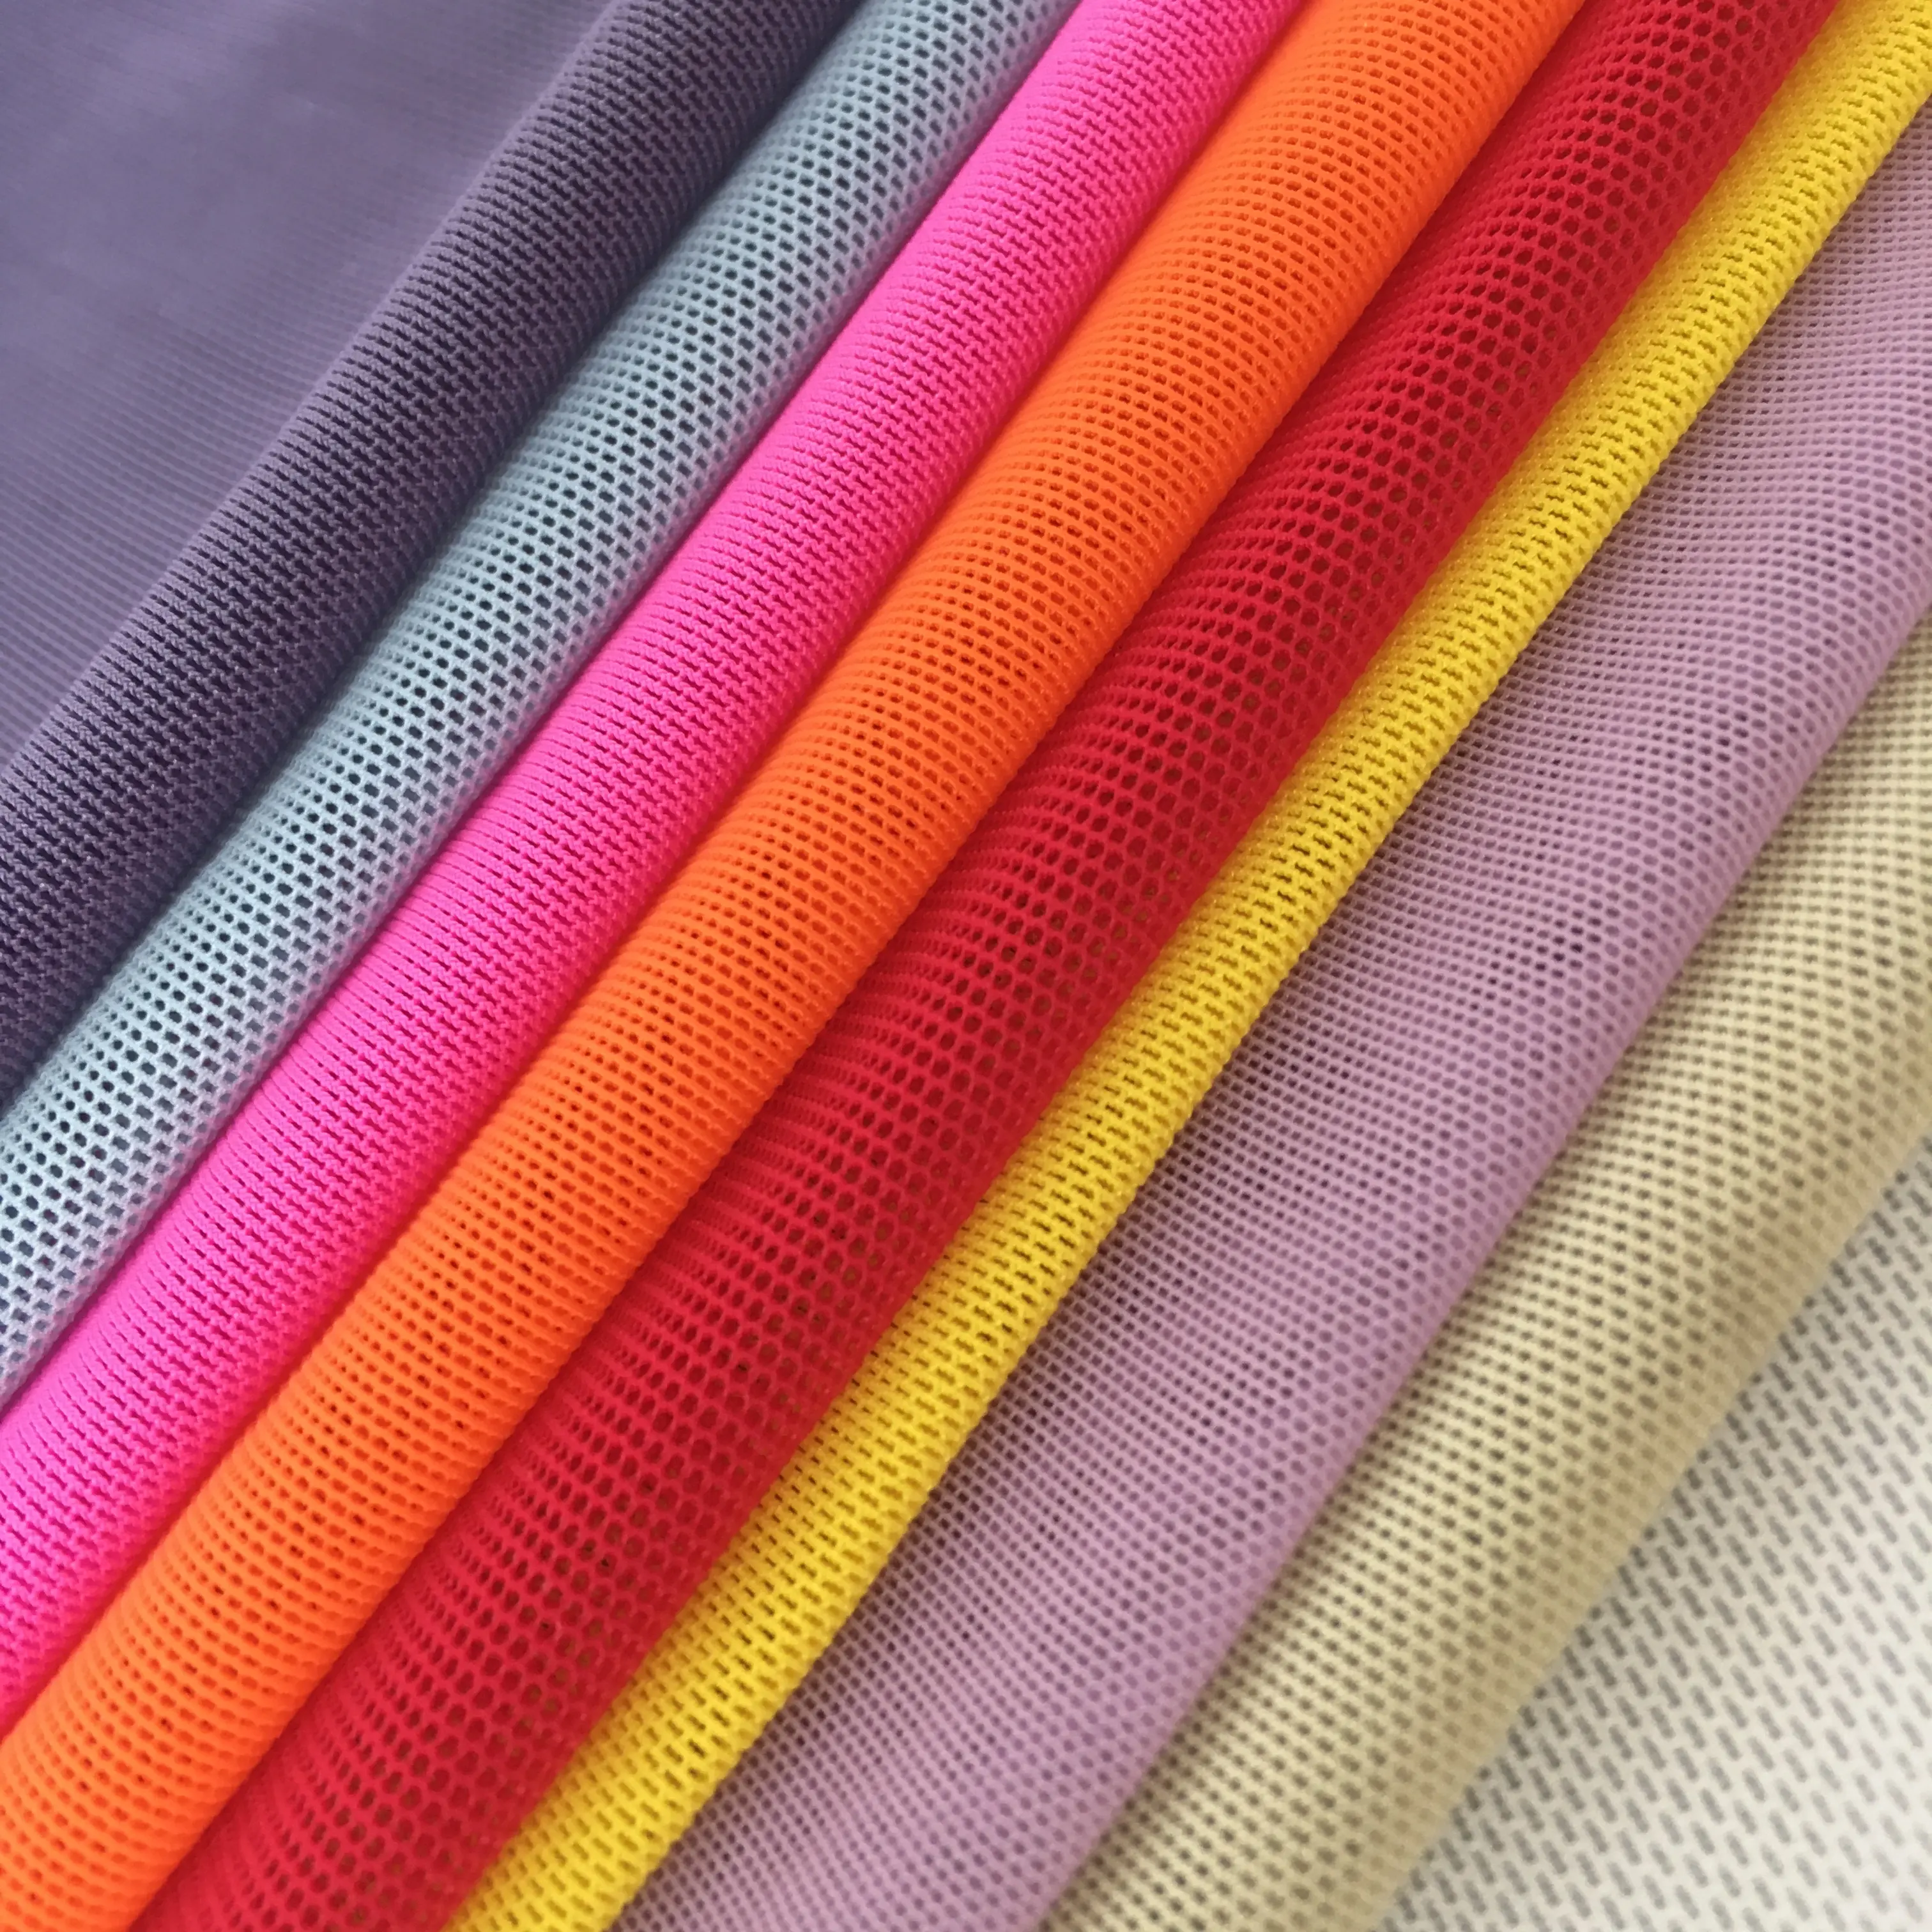 4 Way Stretch Nylon/Spandex Knitting Fabric For Underwear und Yoga